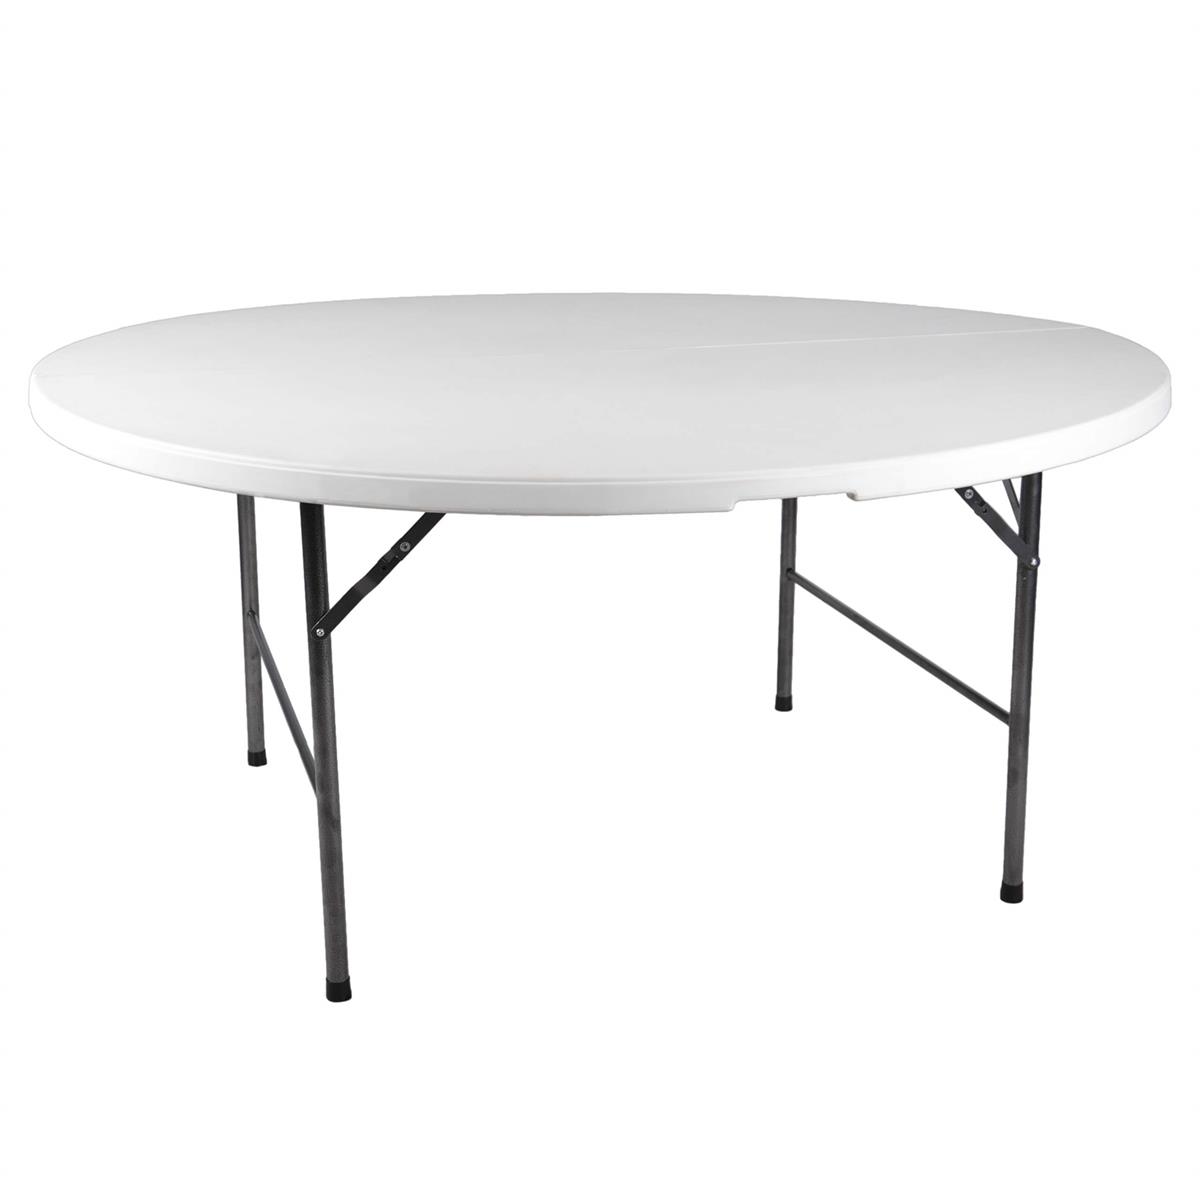 Partytisch Tisch rund Gartentisch klappbar 160 cm B-Ware